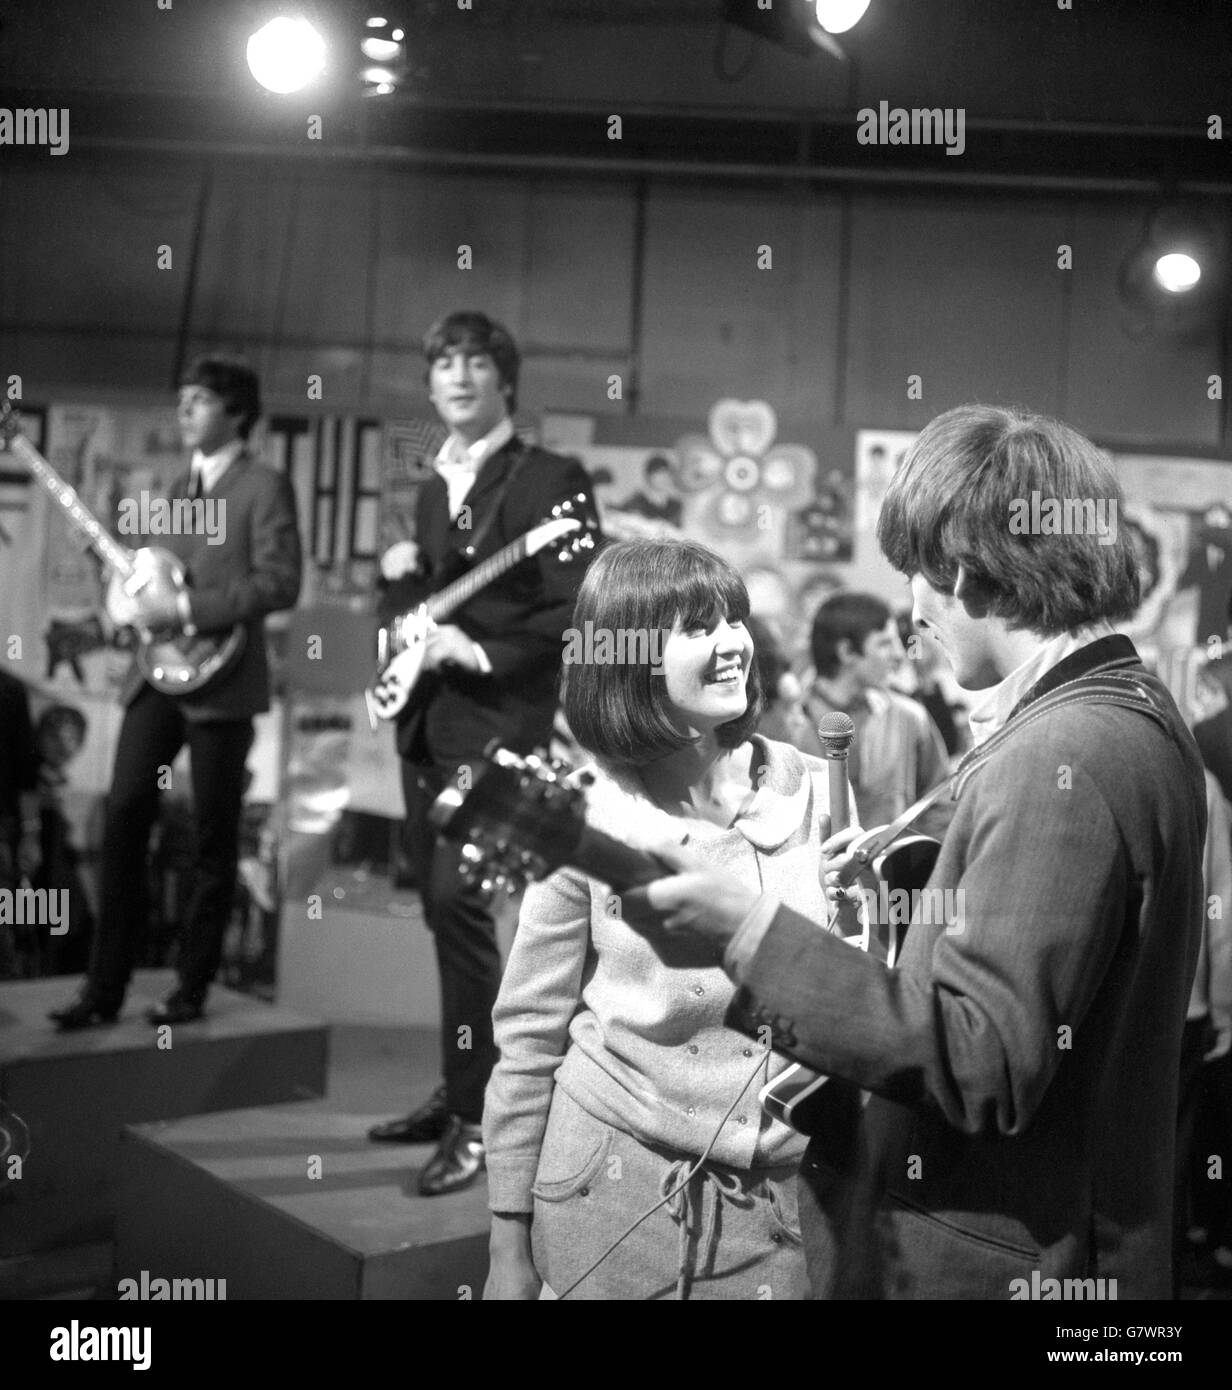 Die Massen von Beatles-Fans vor dem Gebäude hatten sich schwer tun müssen, einen Blick auf ihre Idole zu werfen. Aber hier ist ein Mädchen im Television House, Kingsway, London, das tatsächlich mit ihnen sprechen konnte - offiziell. Sie ist CATHY McGowan, Teenager-Beraters der Independent-Fernsehpop-Sendung „Ready, Steady, Go“ und wird bei der Probe, die dem Auftritt der Beatles vorausging, als sie George HARRISON interviewte. Die beiden im Hintergrund zu sehenden Mitglieder der Gruppe sind PAUL McCartney (links) und JOHN LENNON. Stockfoto